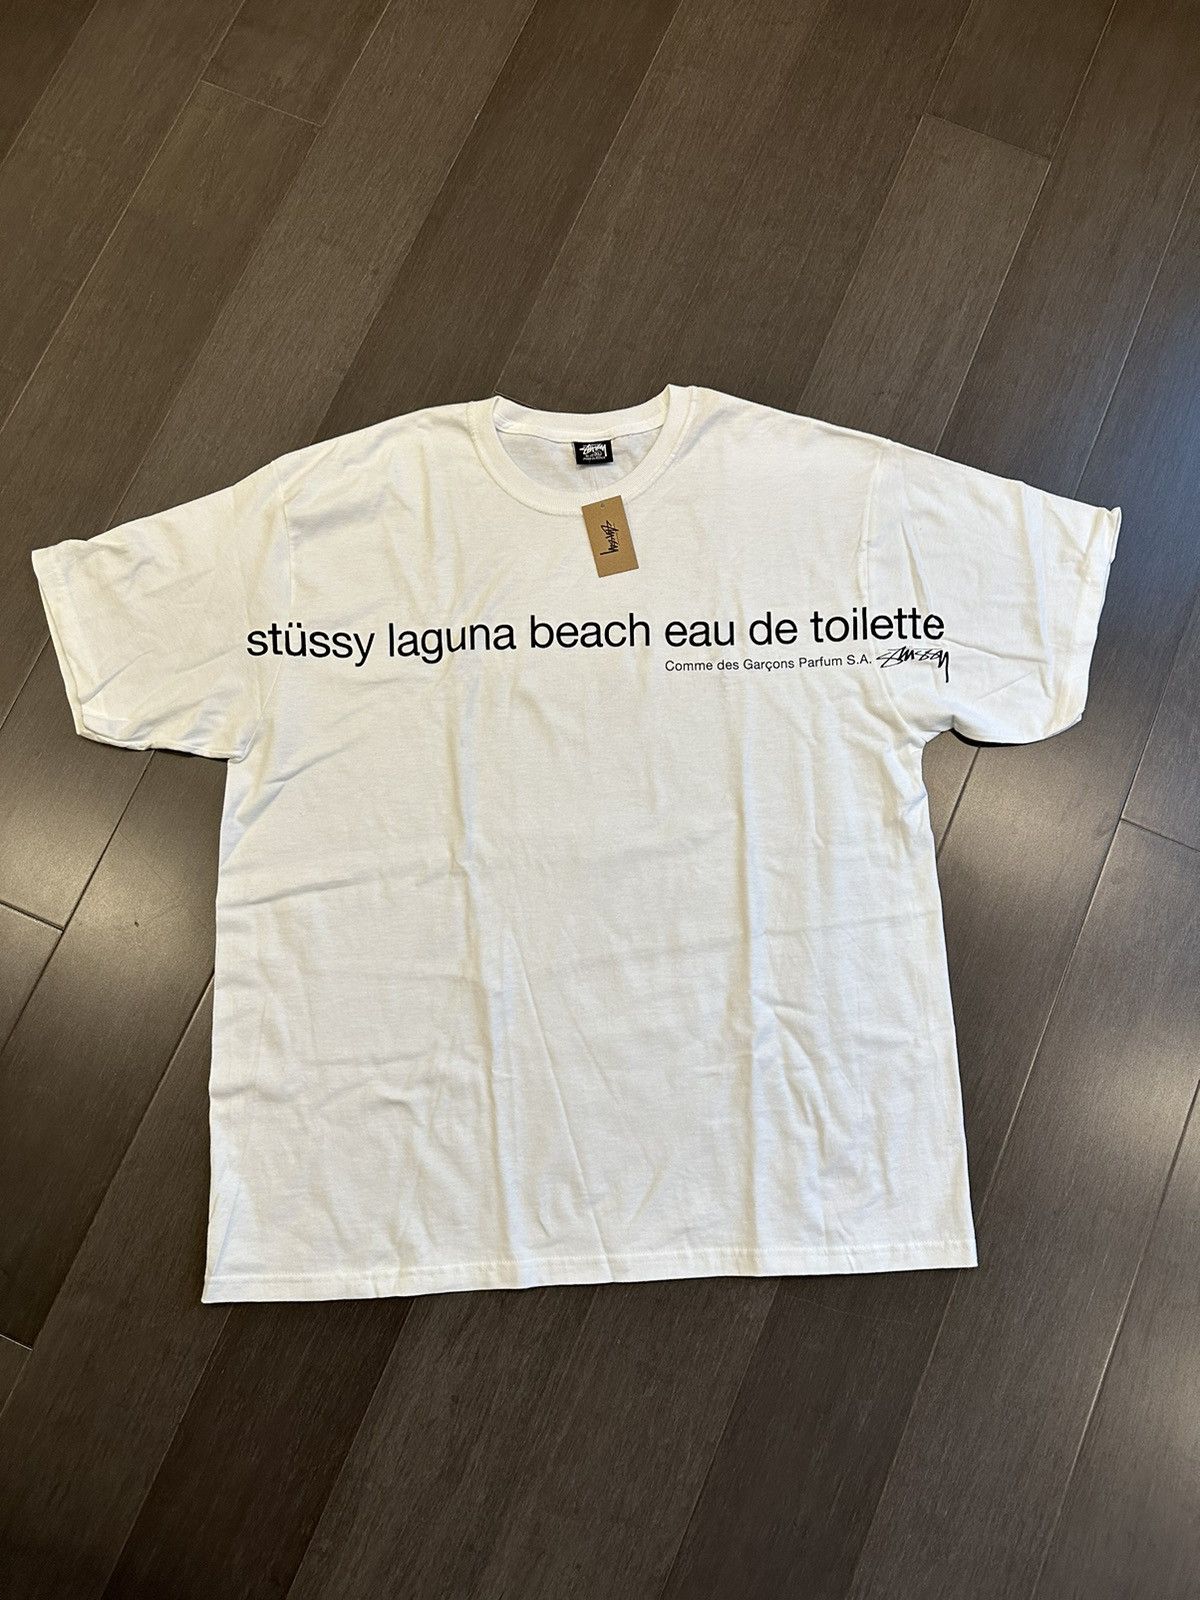 Stussy Stussy x CDG Laguna Beach T-Shirt | Grailed